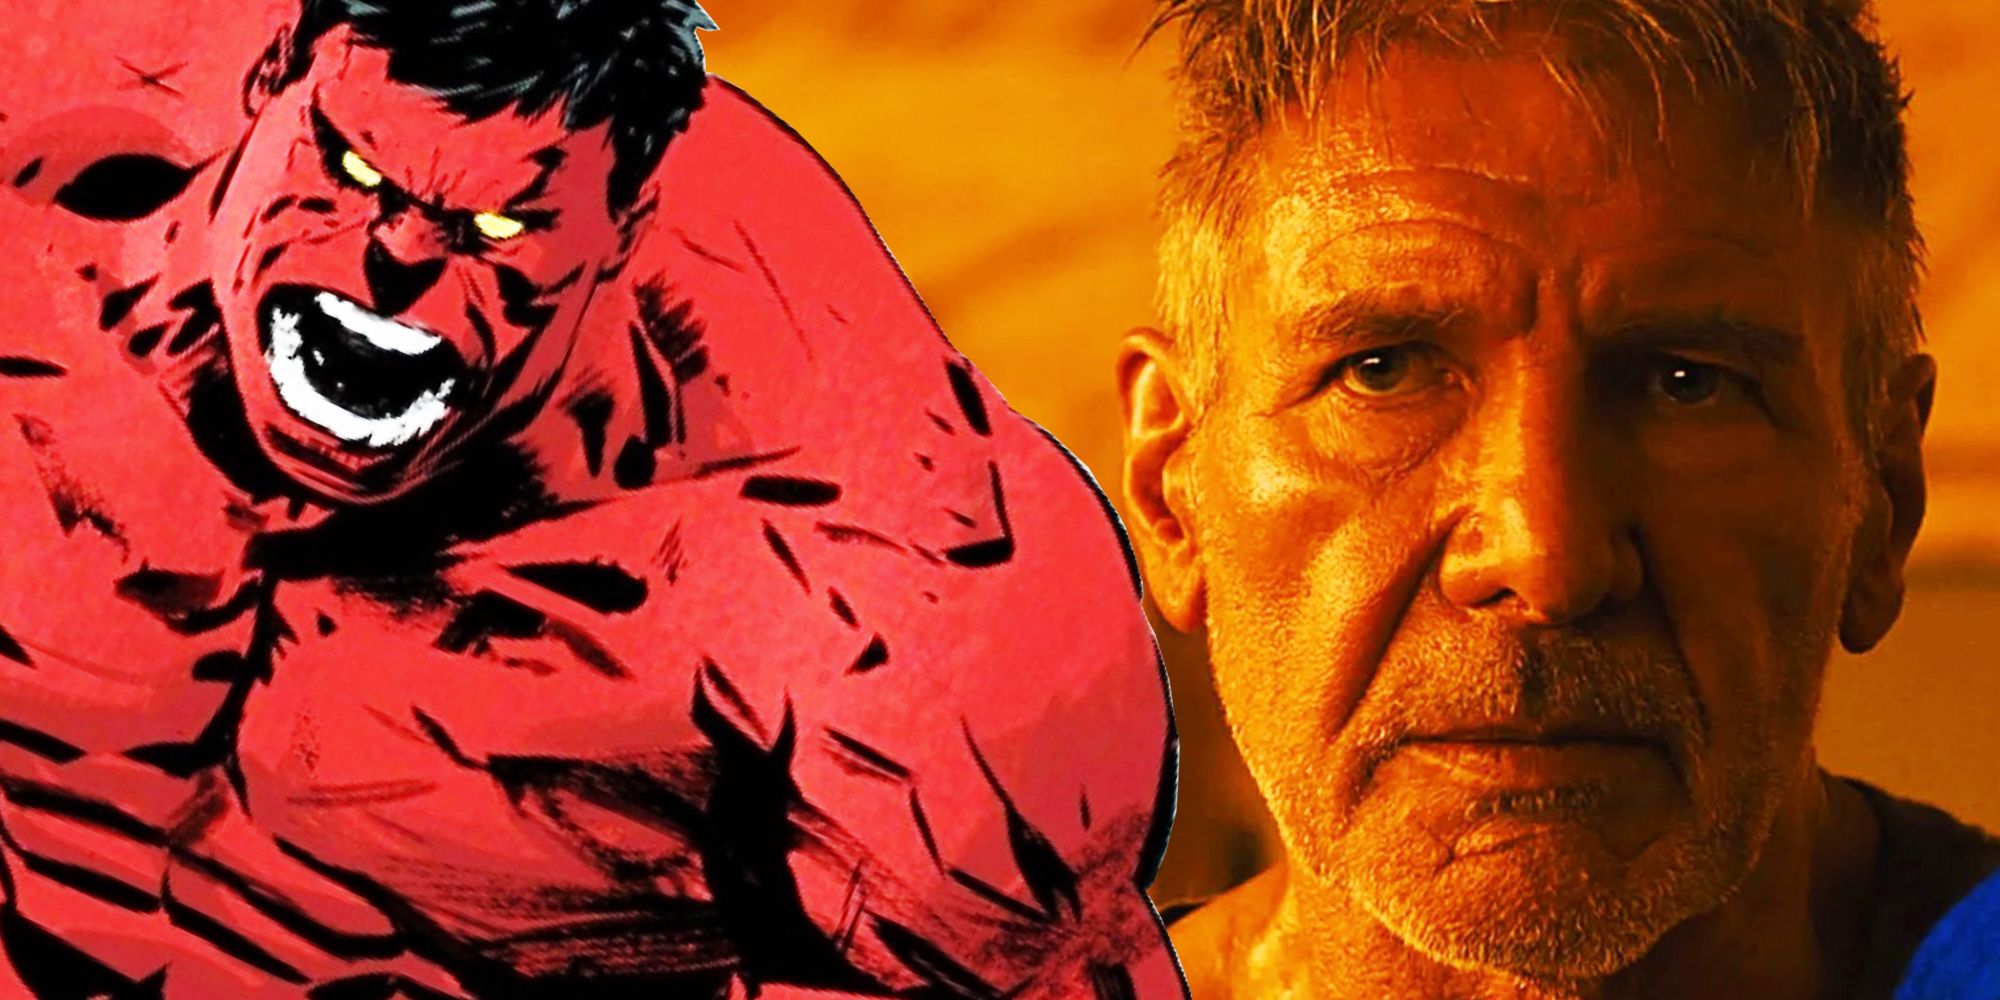 Blade Runner 2049'da tarafsız görünen Deckard rolünde Harrison Ford'un ve kızgın görünen Red Hulk çizgi romanının harmanlanmış görüntüsü